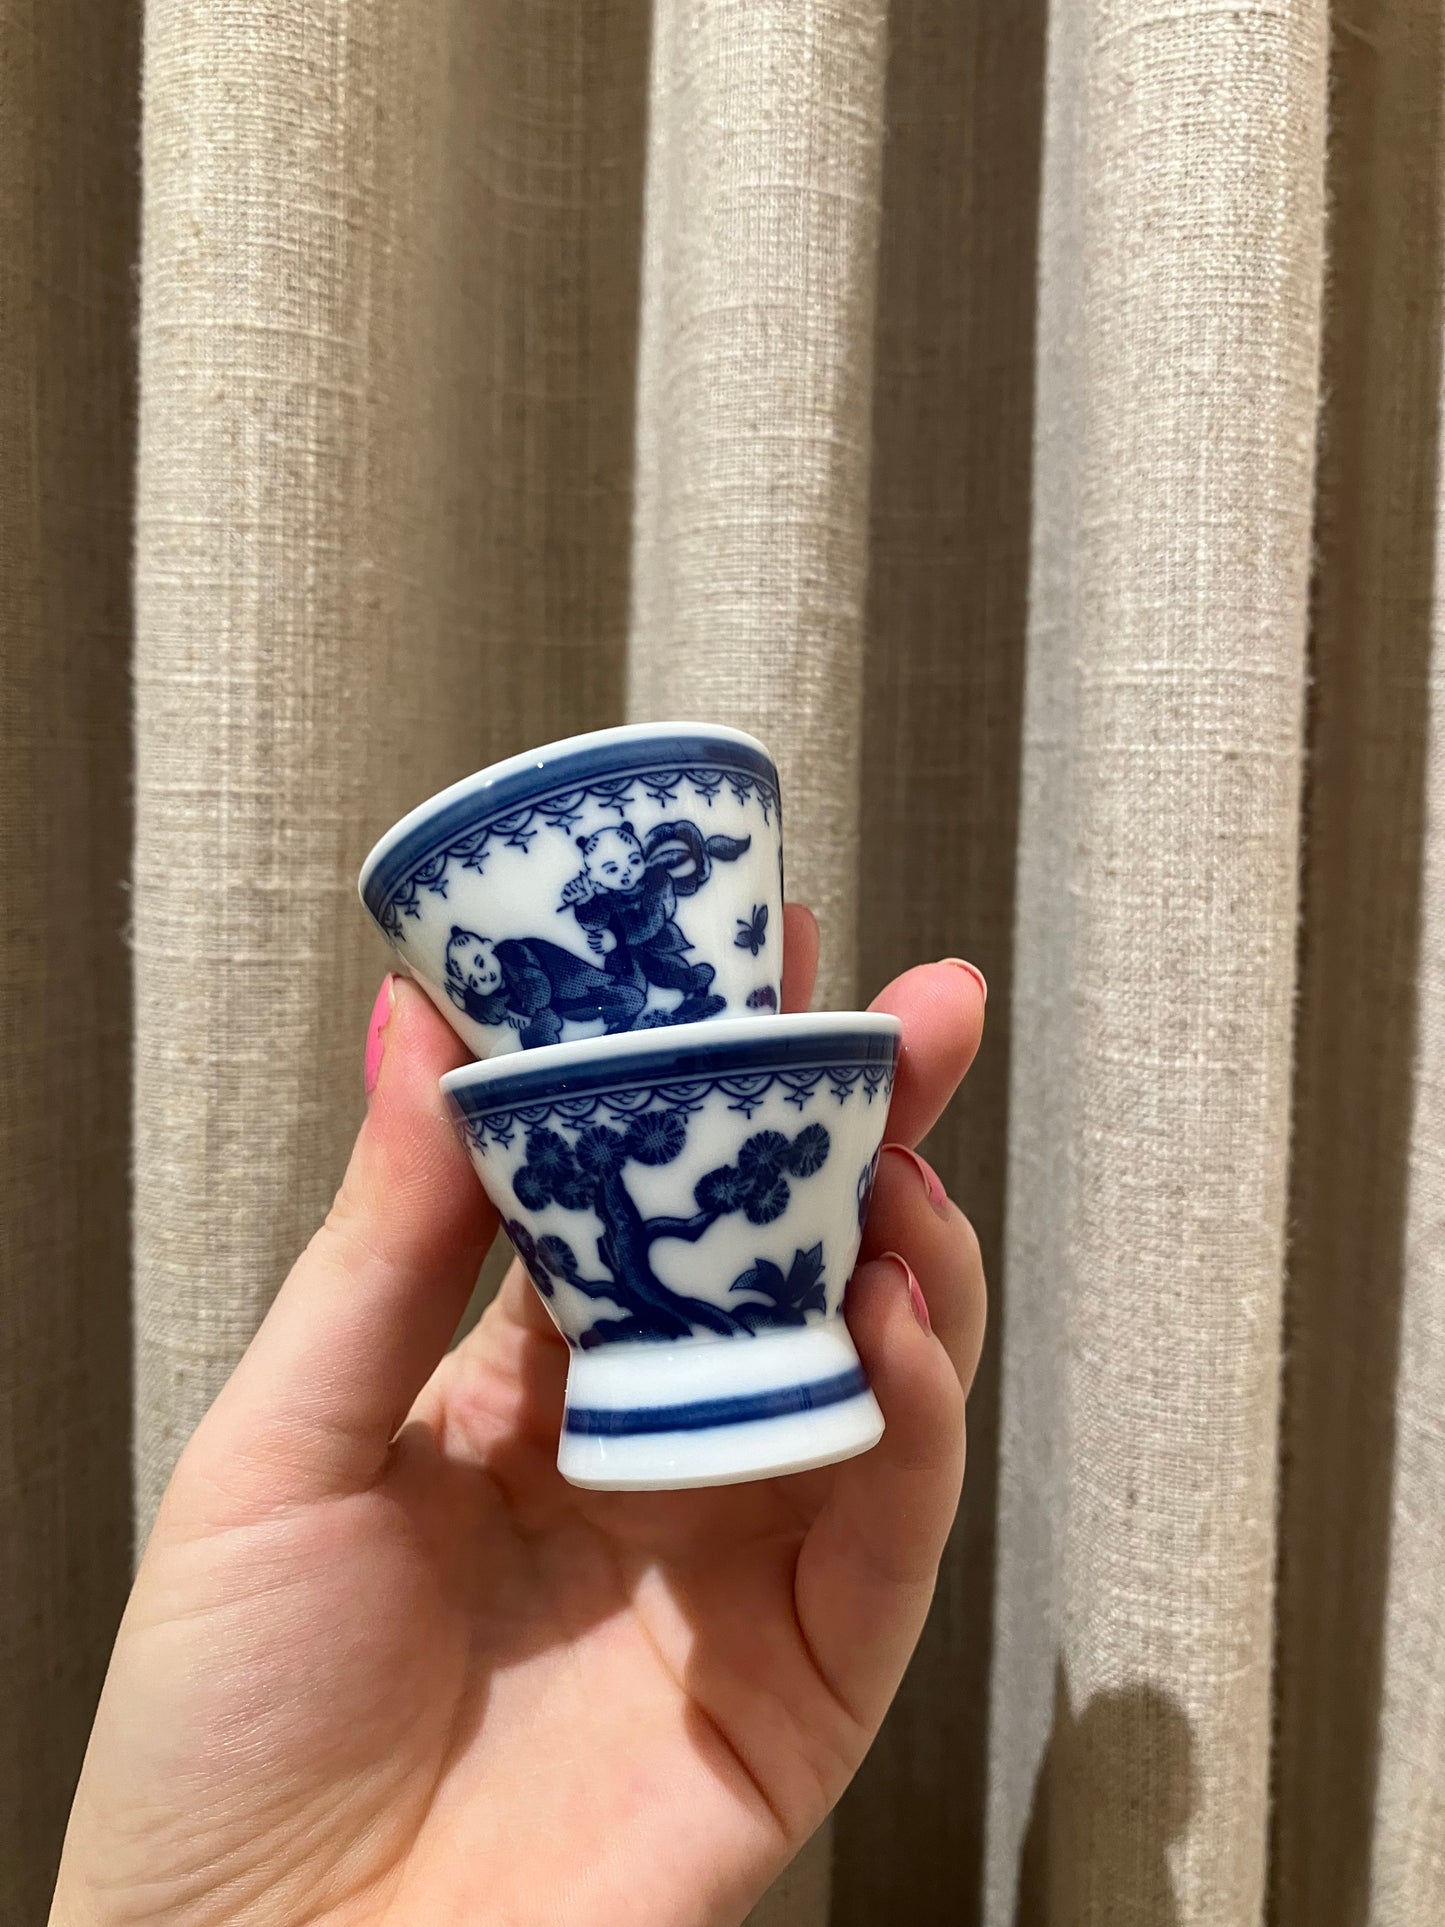 Sakekopper med blåt japansk motiv